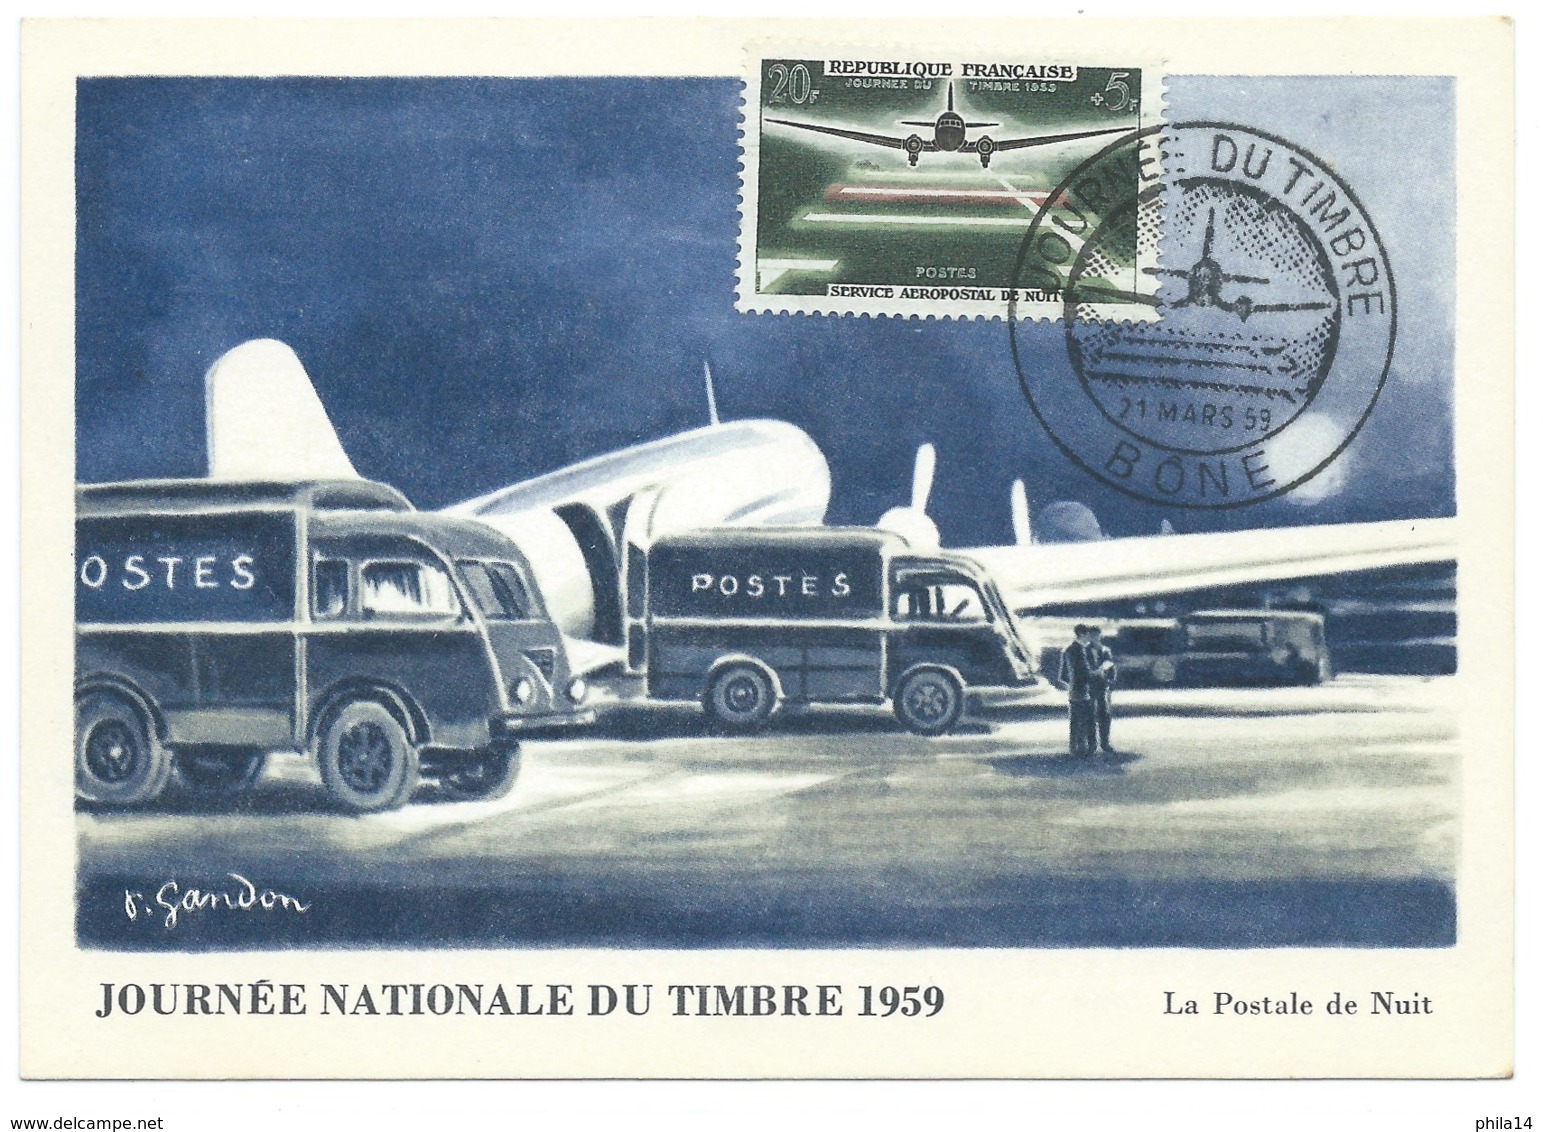 SERVICE AEROPOSTALE DE NUIT  / BONE ALGERIE / 1959 /  JOURNEE DU TIMBRE - Briefe U. Dokumente